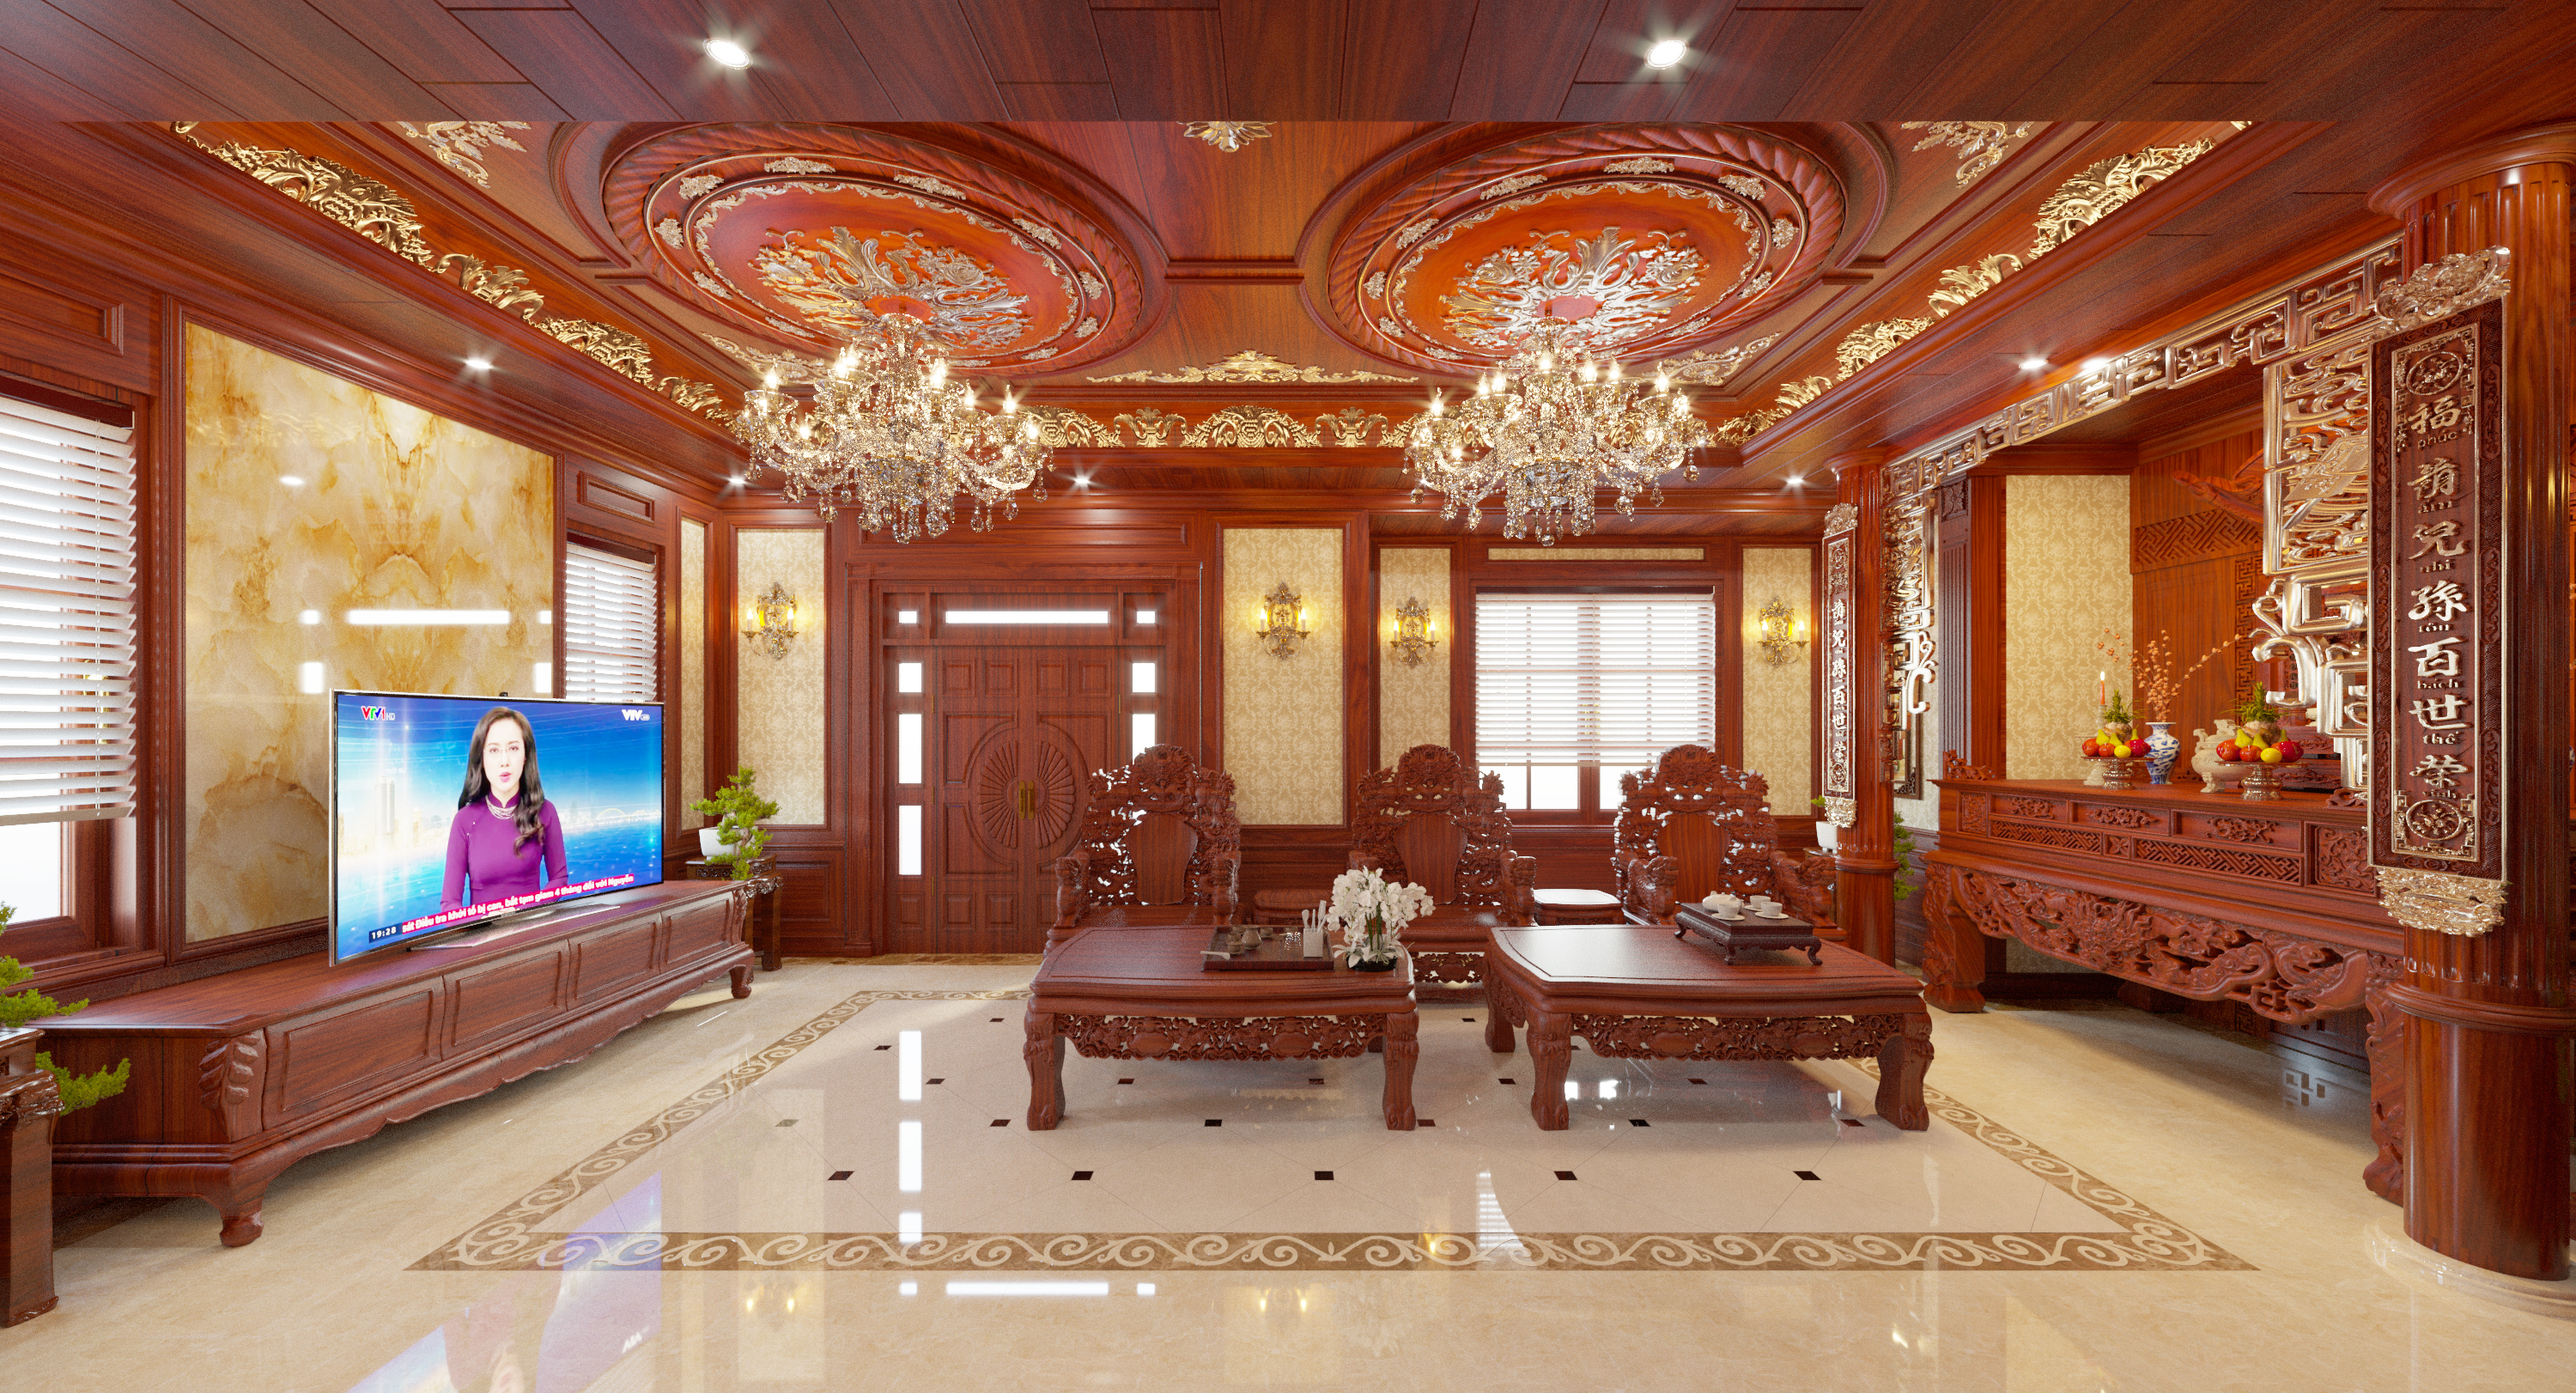 Thiết kế nội thất Biệt Thự tại Bắc Ninh Nội Thất Anh Thanh - Bắc Ninh 1628407454 0